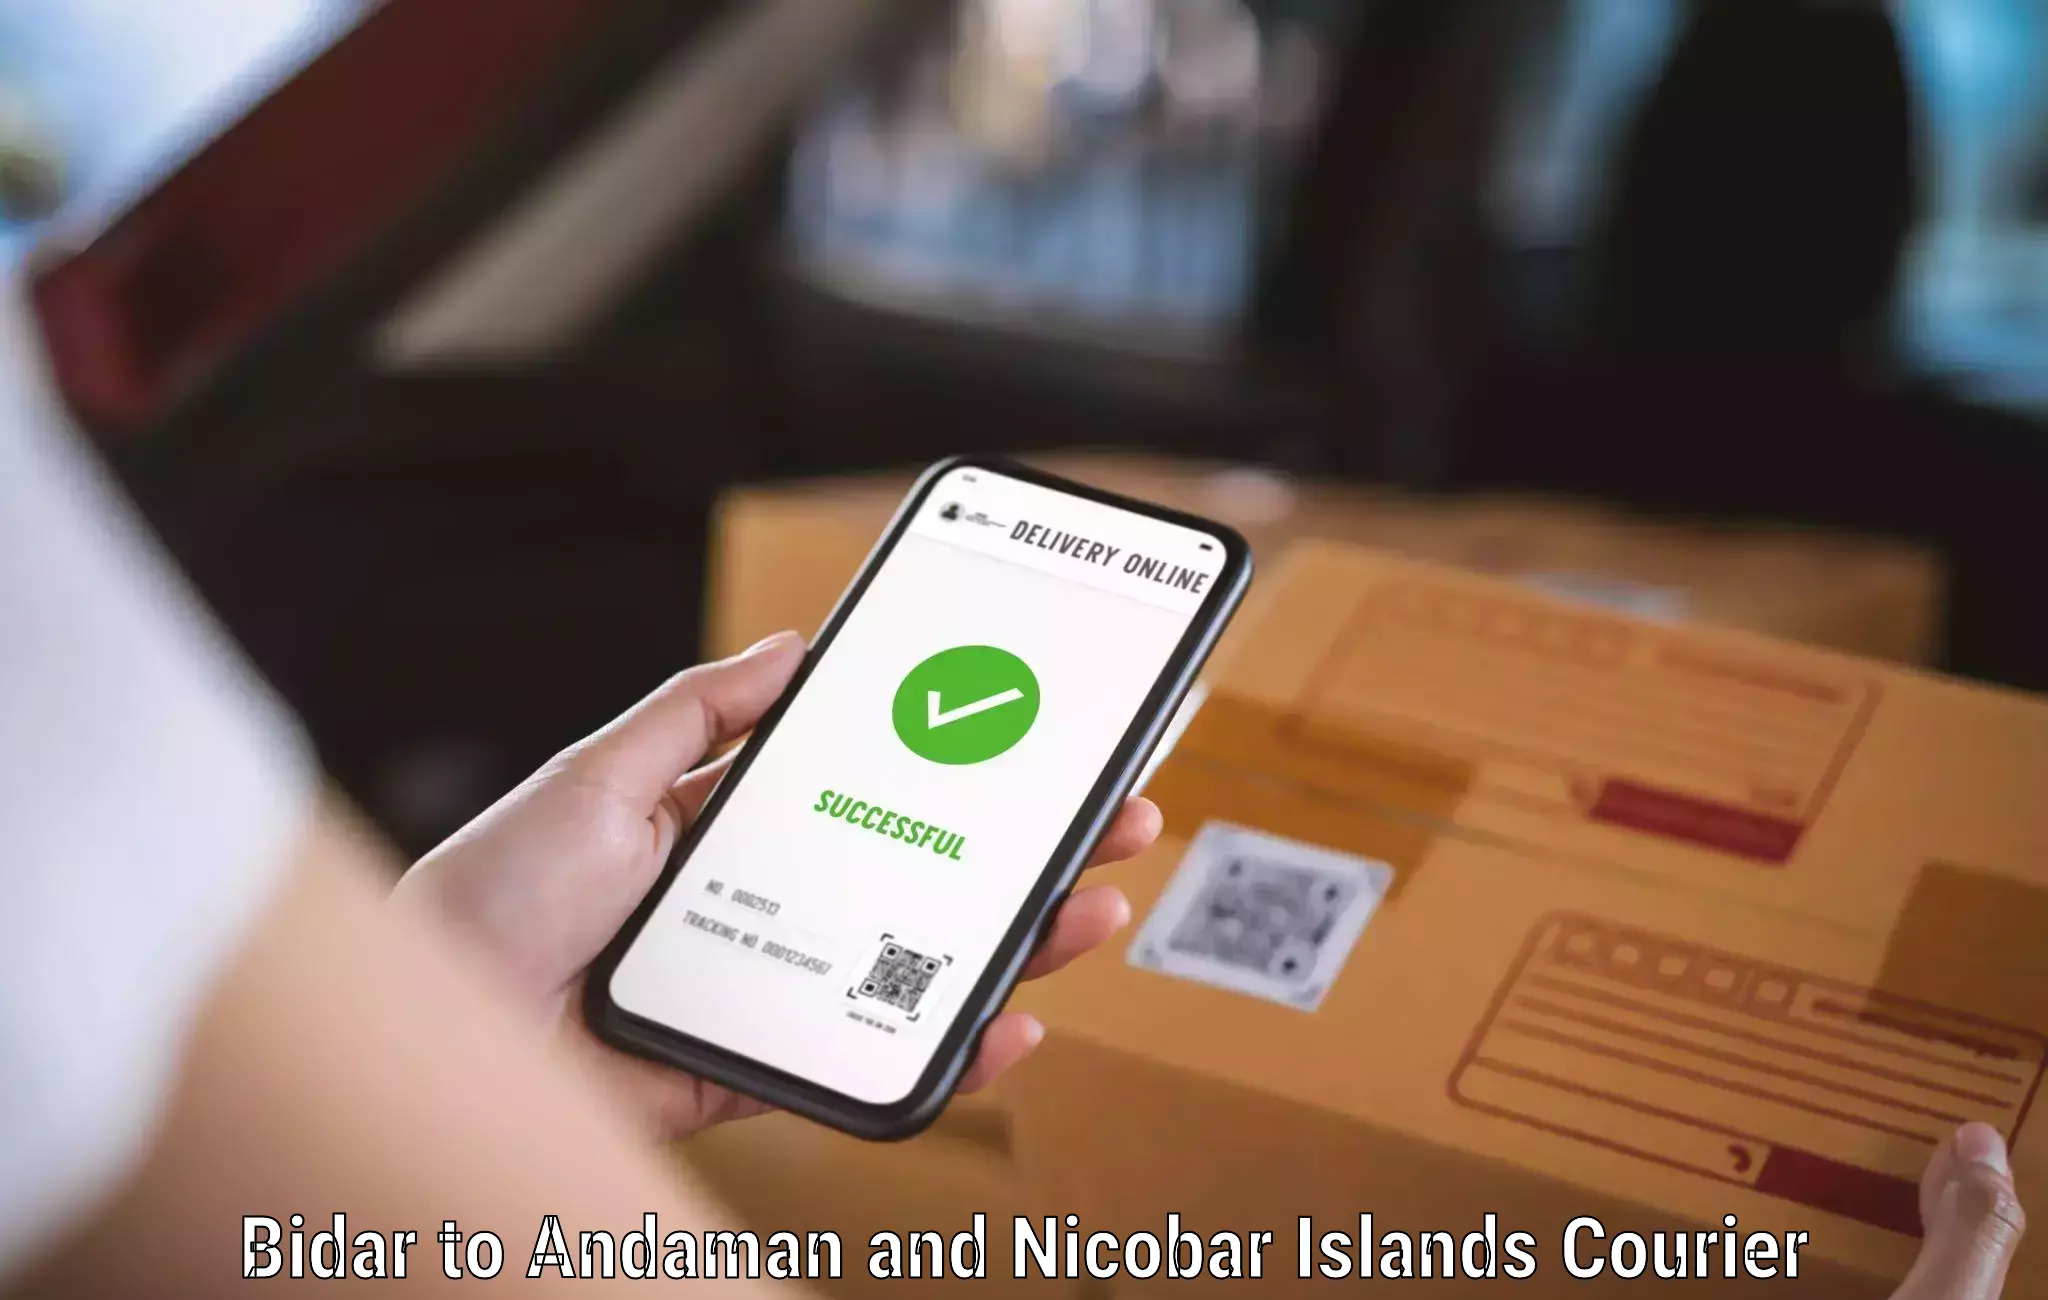 Courier app Bidar to South Andaman